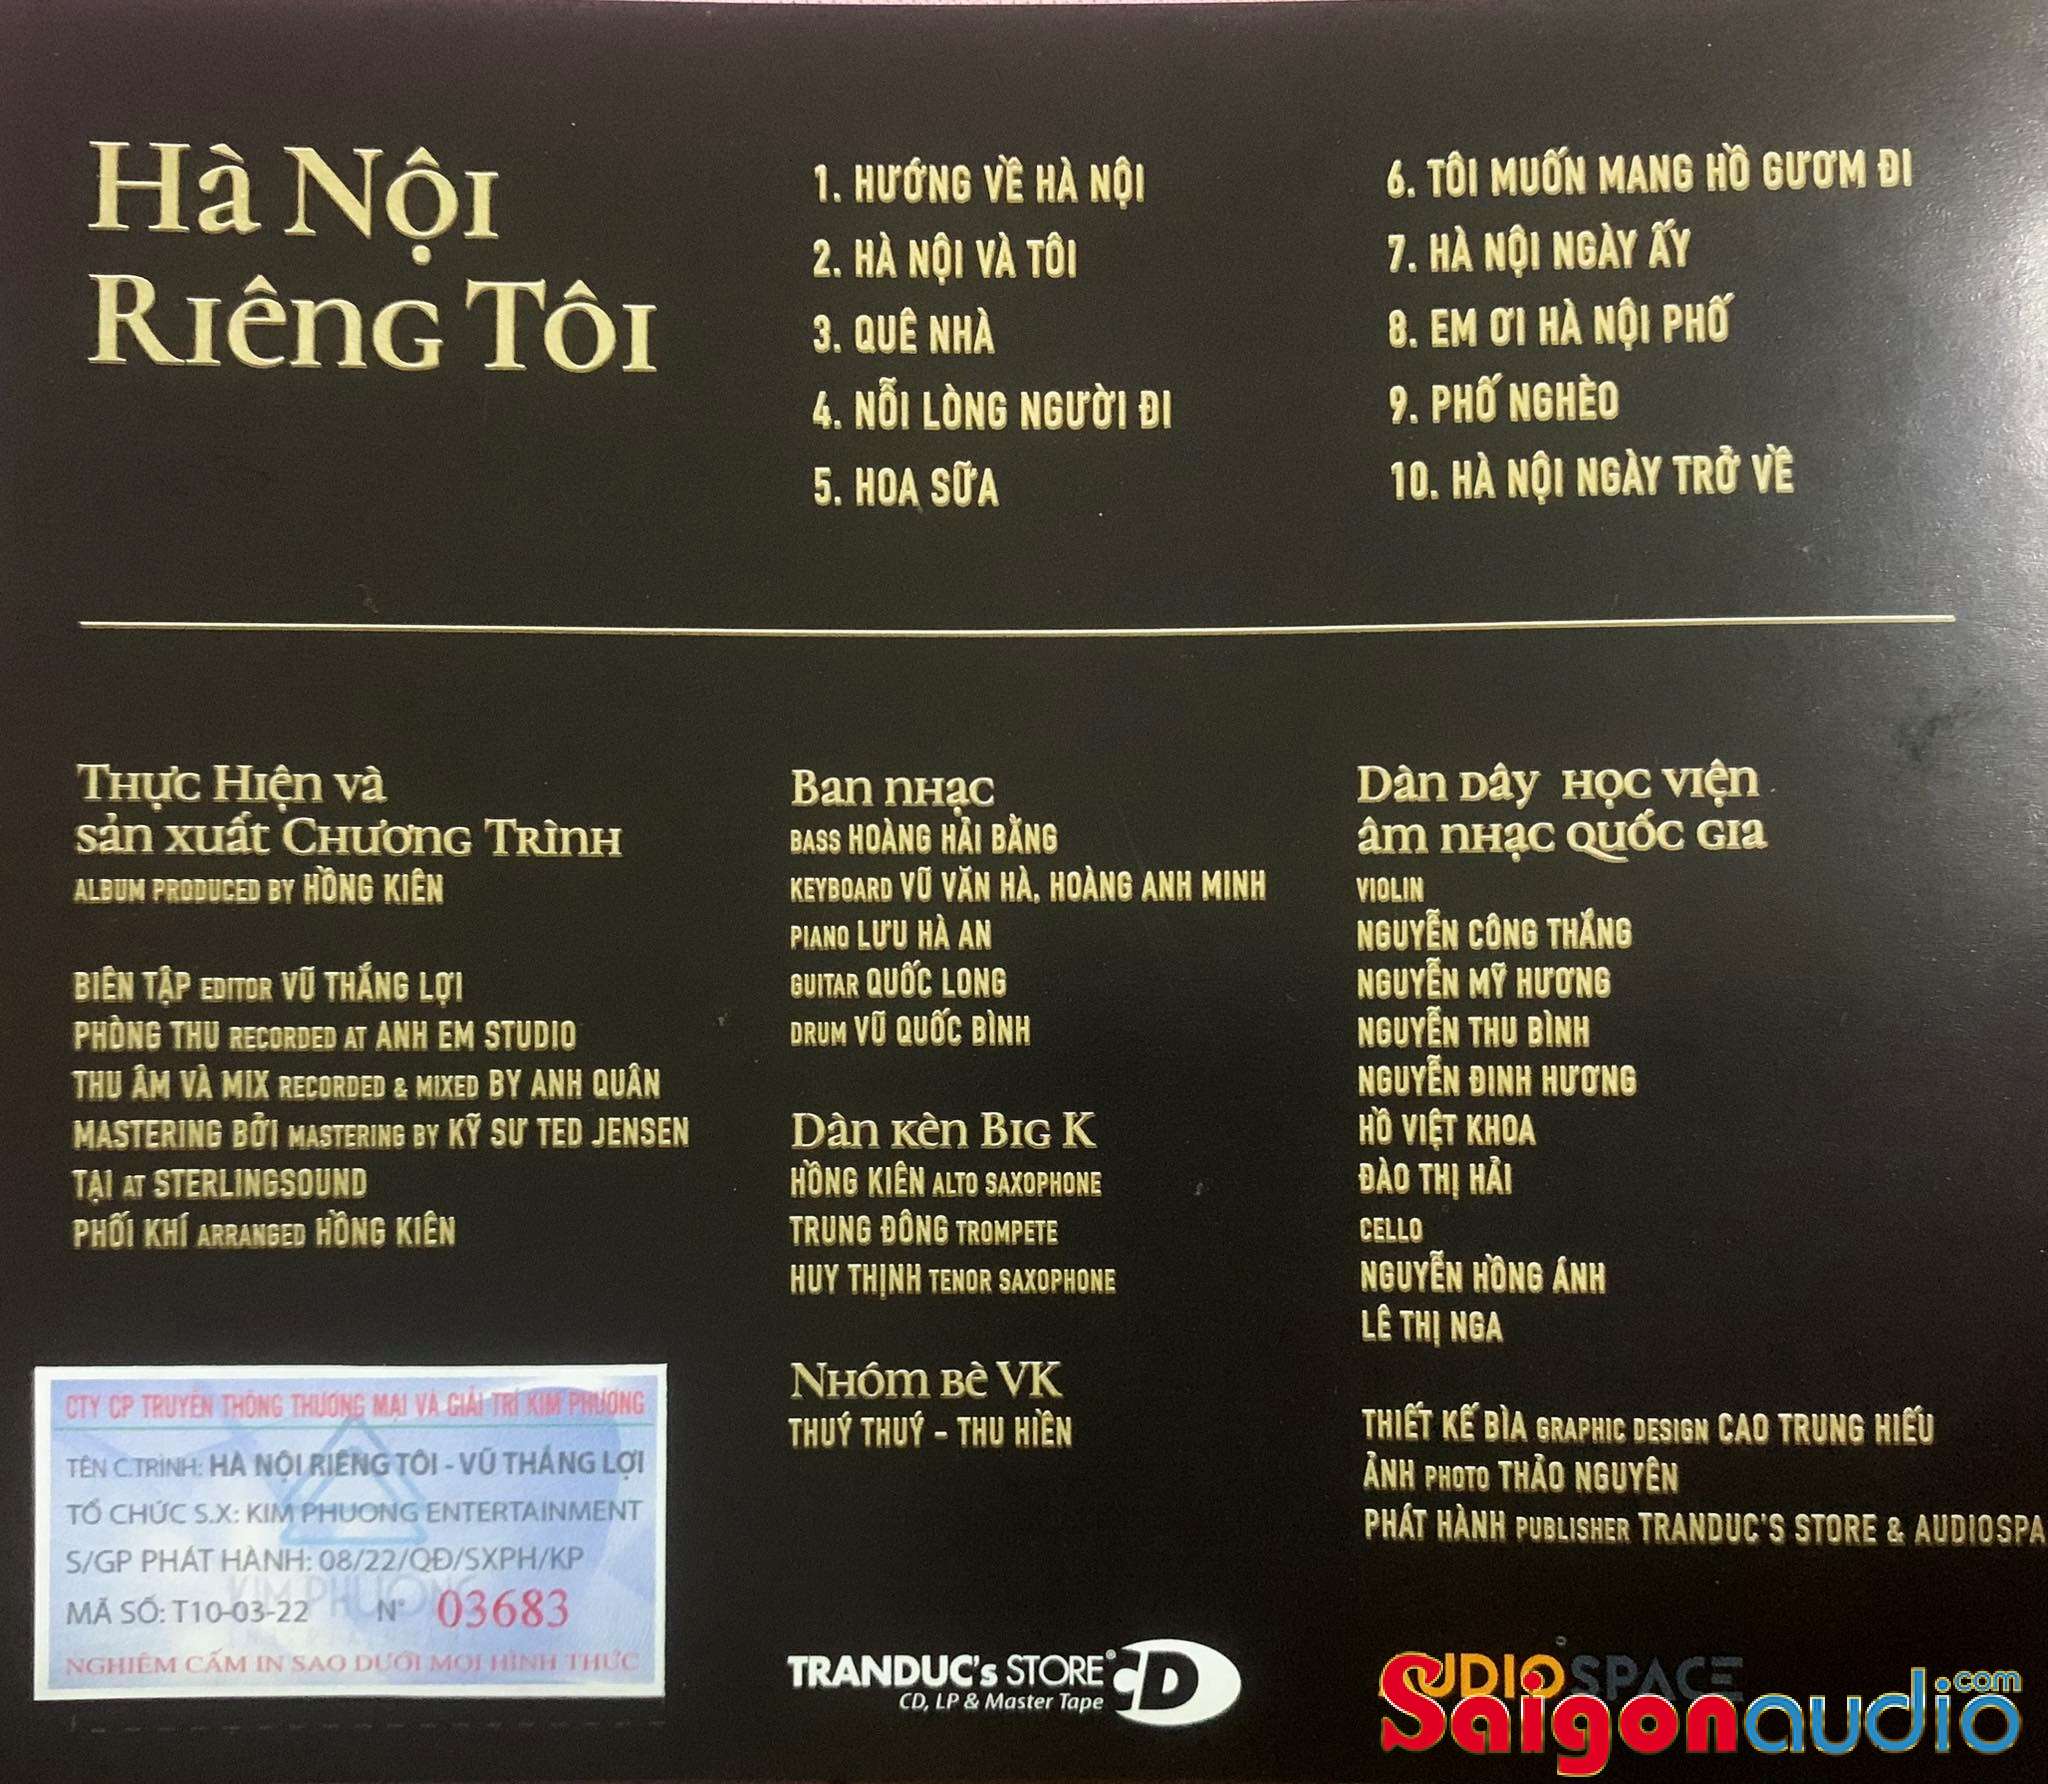 Đĩa CD nhạc gốc Vũ Thắng Lợi - Hà Nội Riêng Tôi (Free ship nhanh khi mua 2 đĩa CD cùng hoặc khác loại)